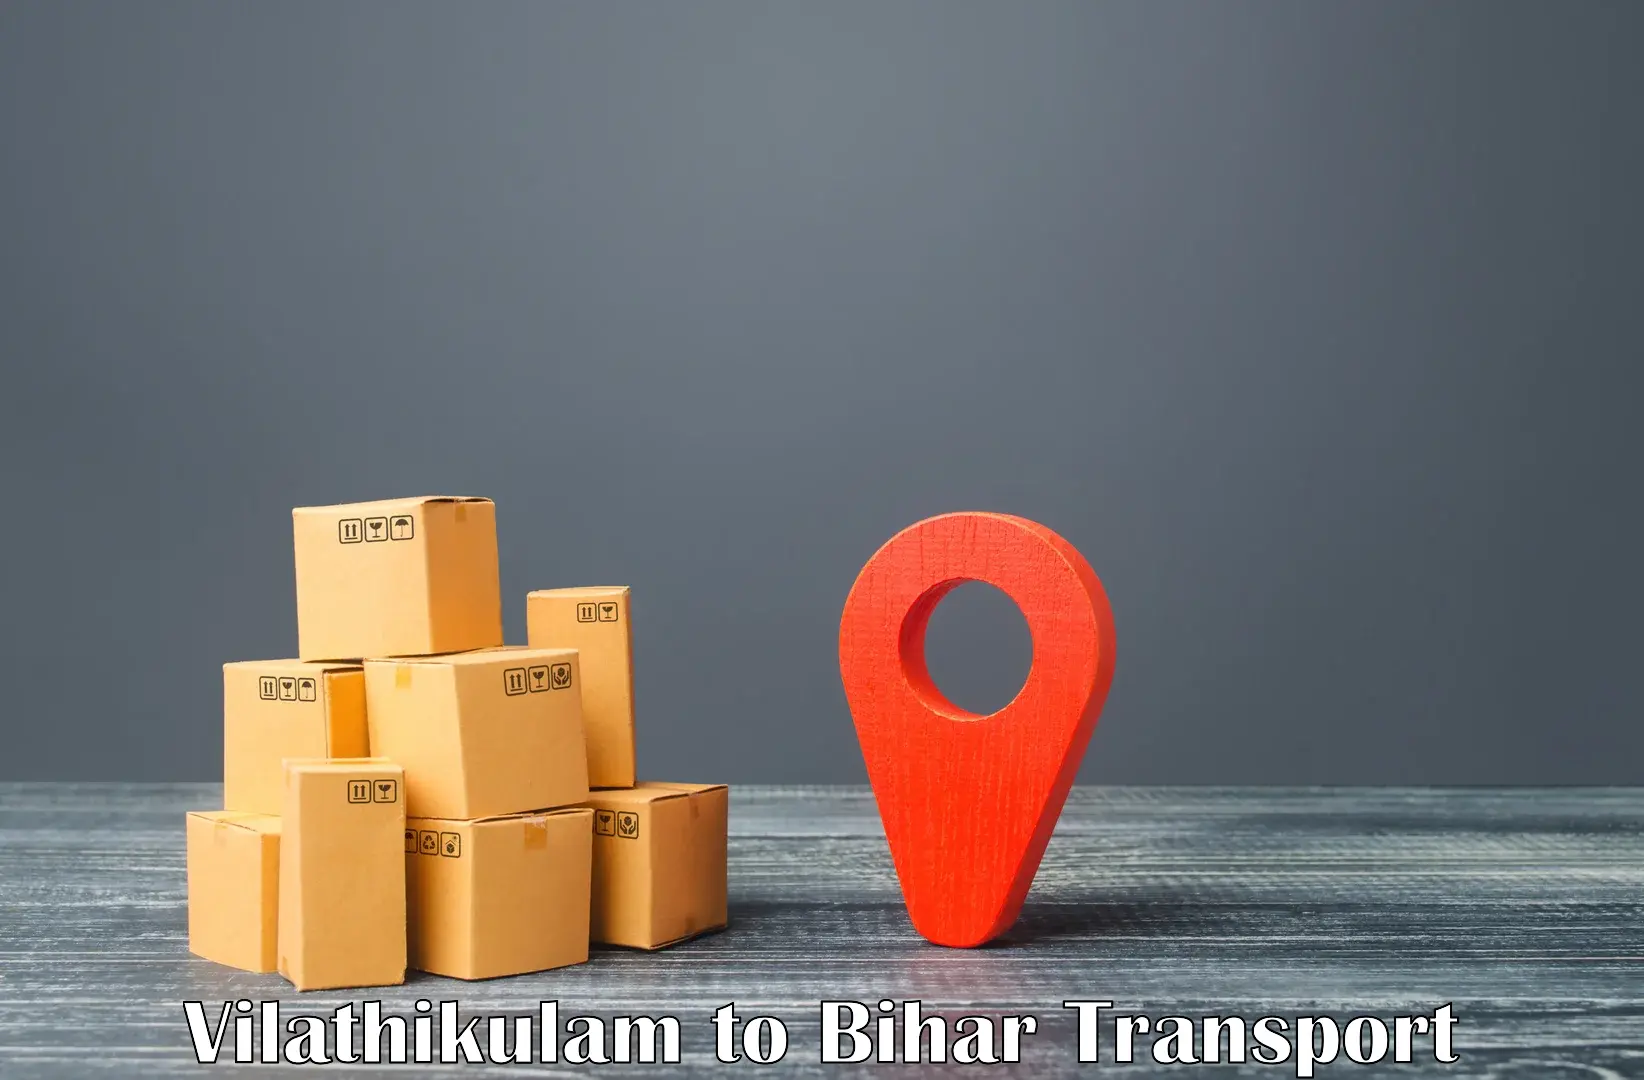 Shipping partner Vilathikulam to Goh Aurangabad